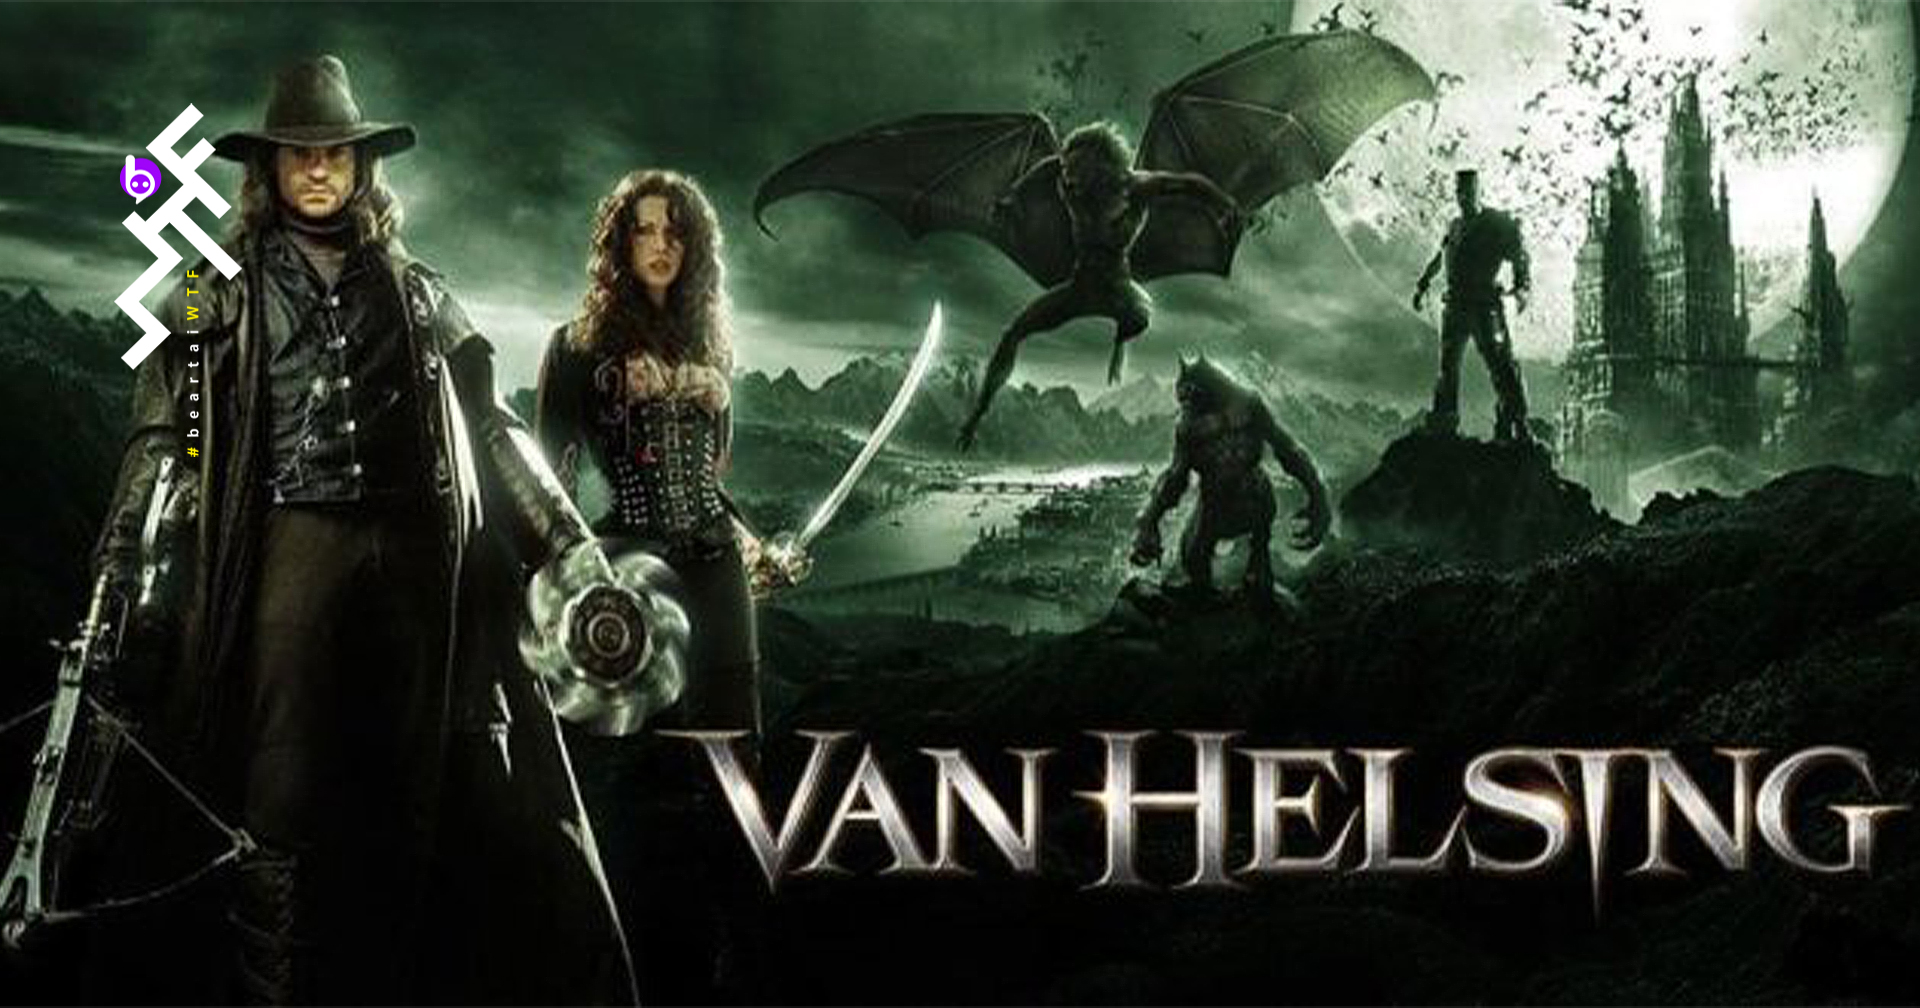 Van Helsing เวอร์ชันรีบูต ได้ เจมส์ วาน รับหน้าที่อำนวยการสร้าง